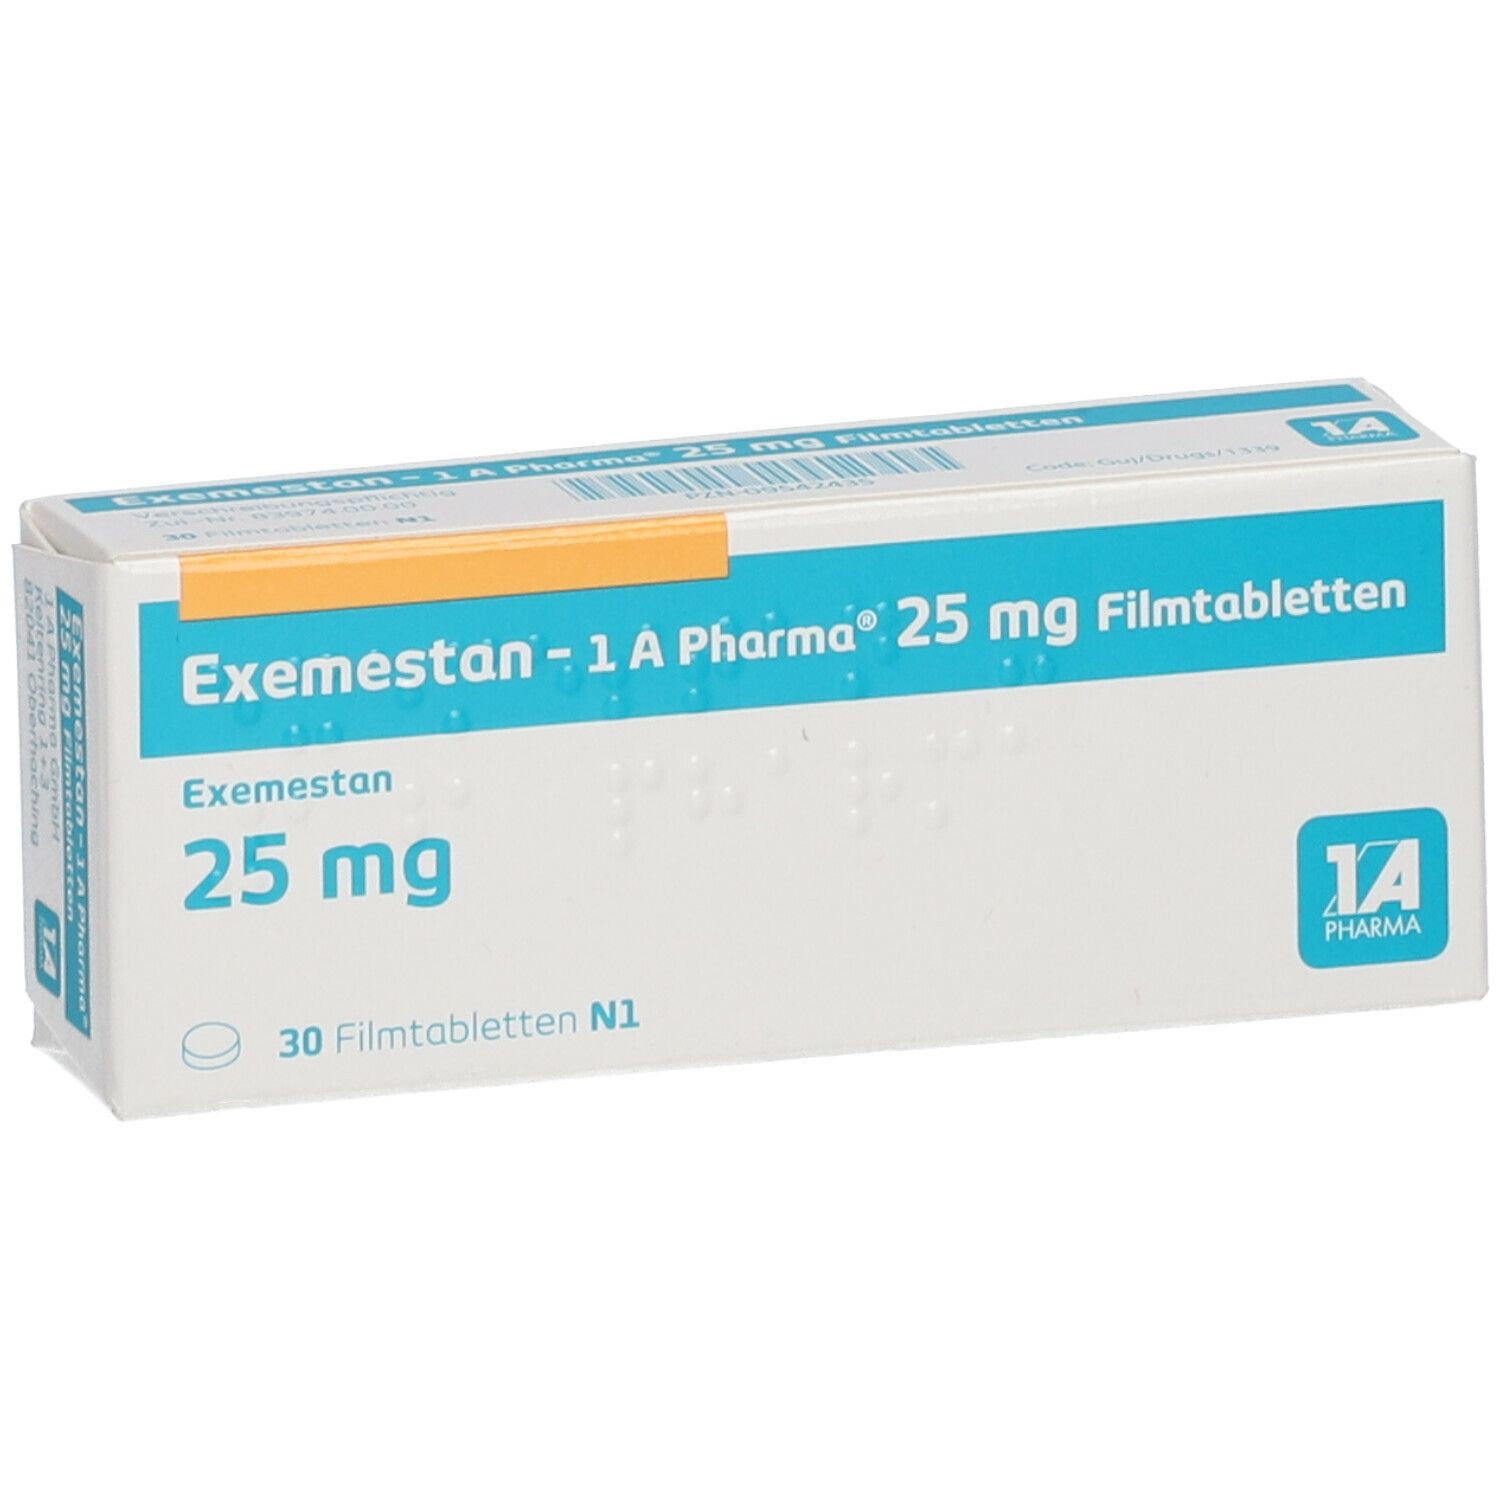 3 Kurzgeschichten, von denen Sie nichts wussten Propandrol (Testosterone P) Balkan Pharmaceuticals 100 mg